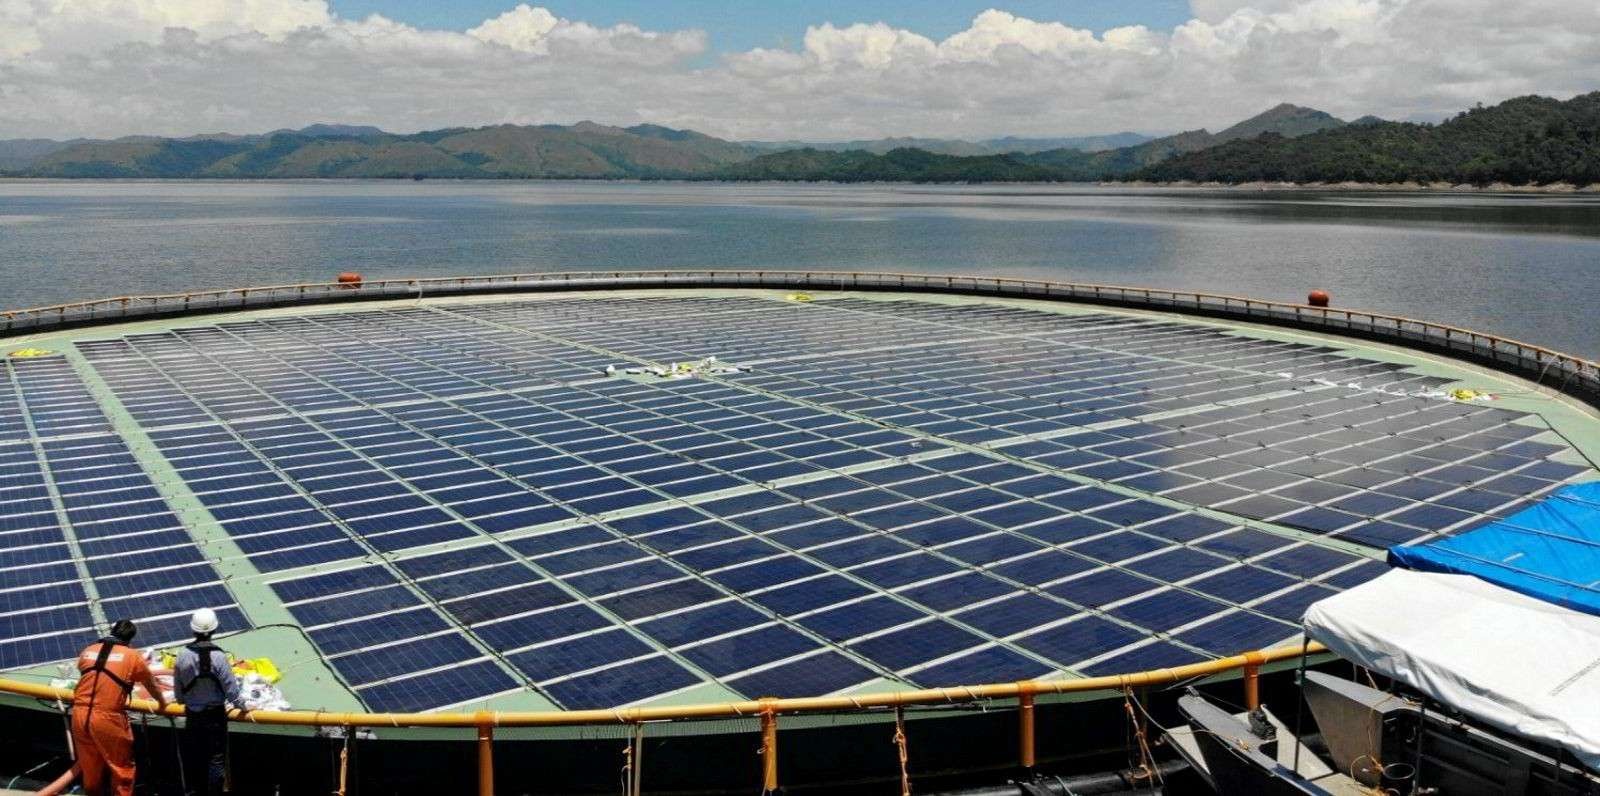 Dezhou Dingzhuang Floating Solar Farm, China